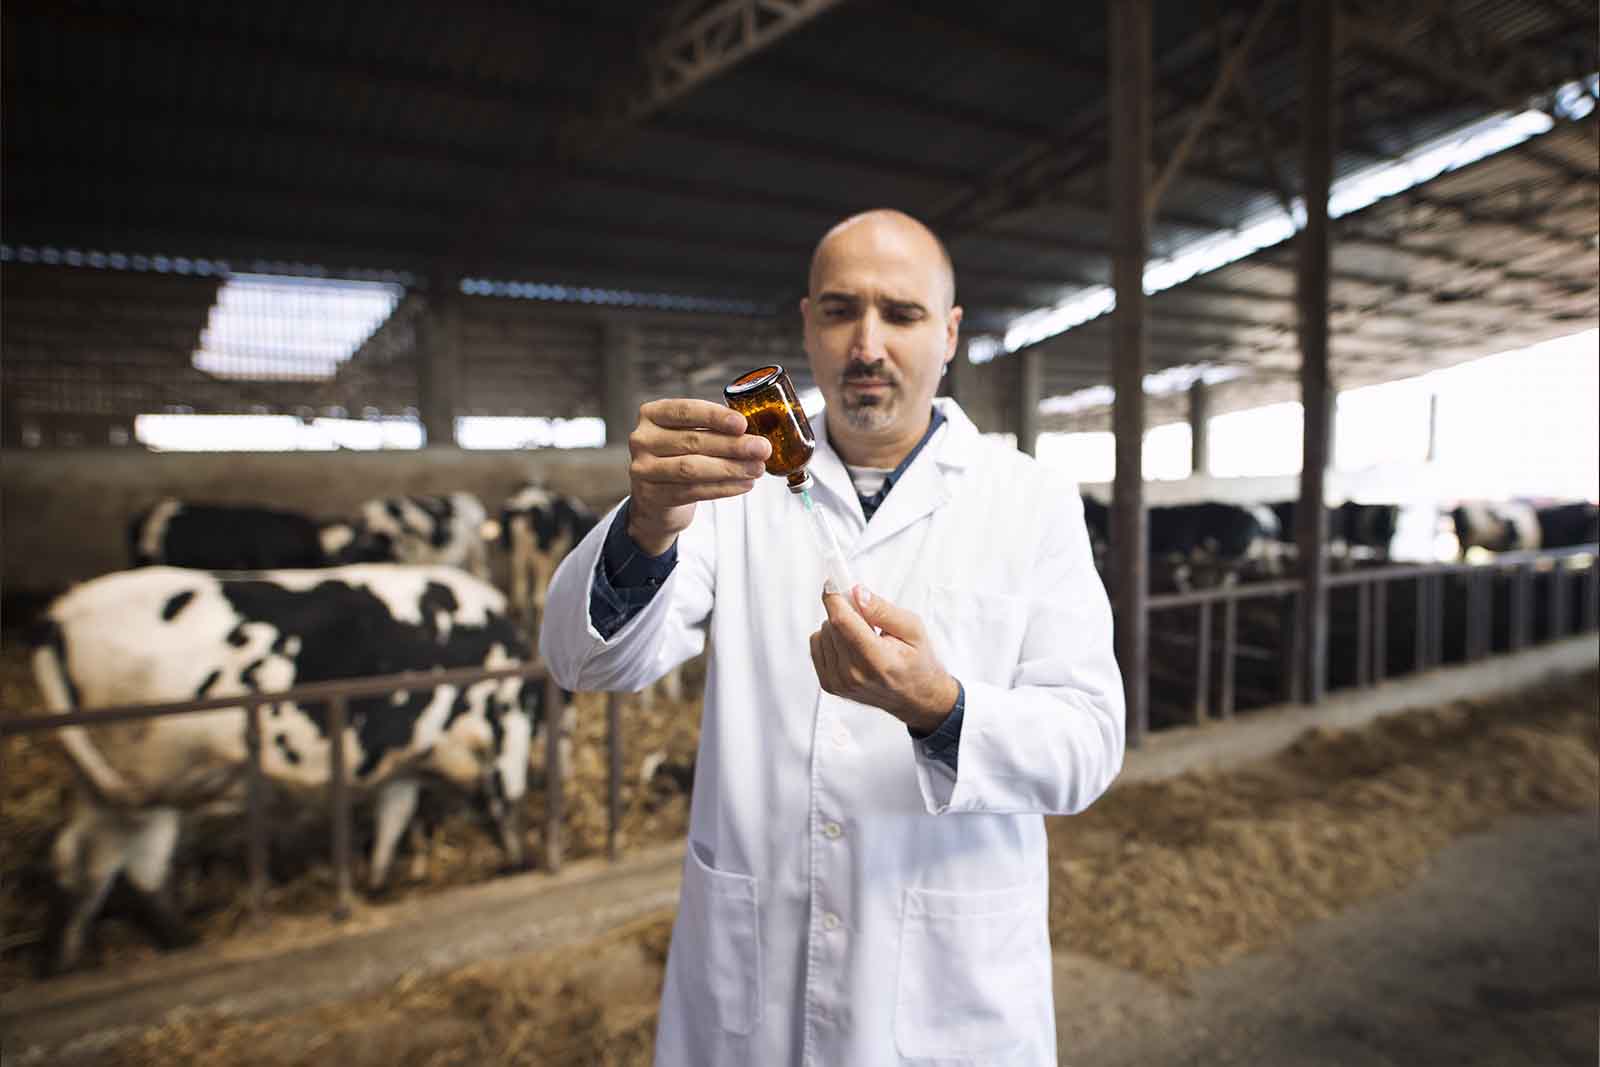 imagem de um médico veterinário preparando uma dose de vacina em um galpão com diversos bovinos no fundo 